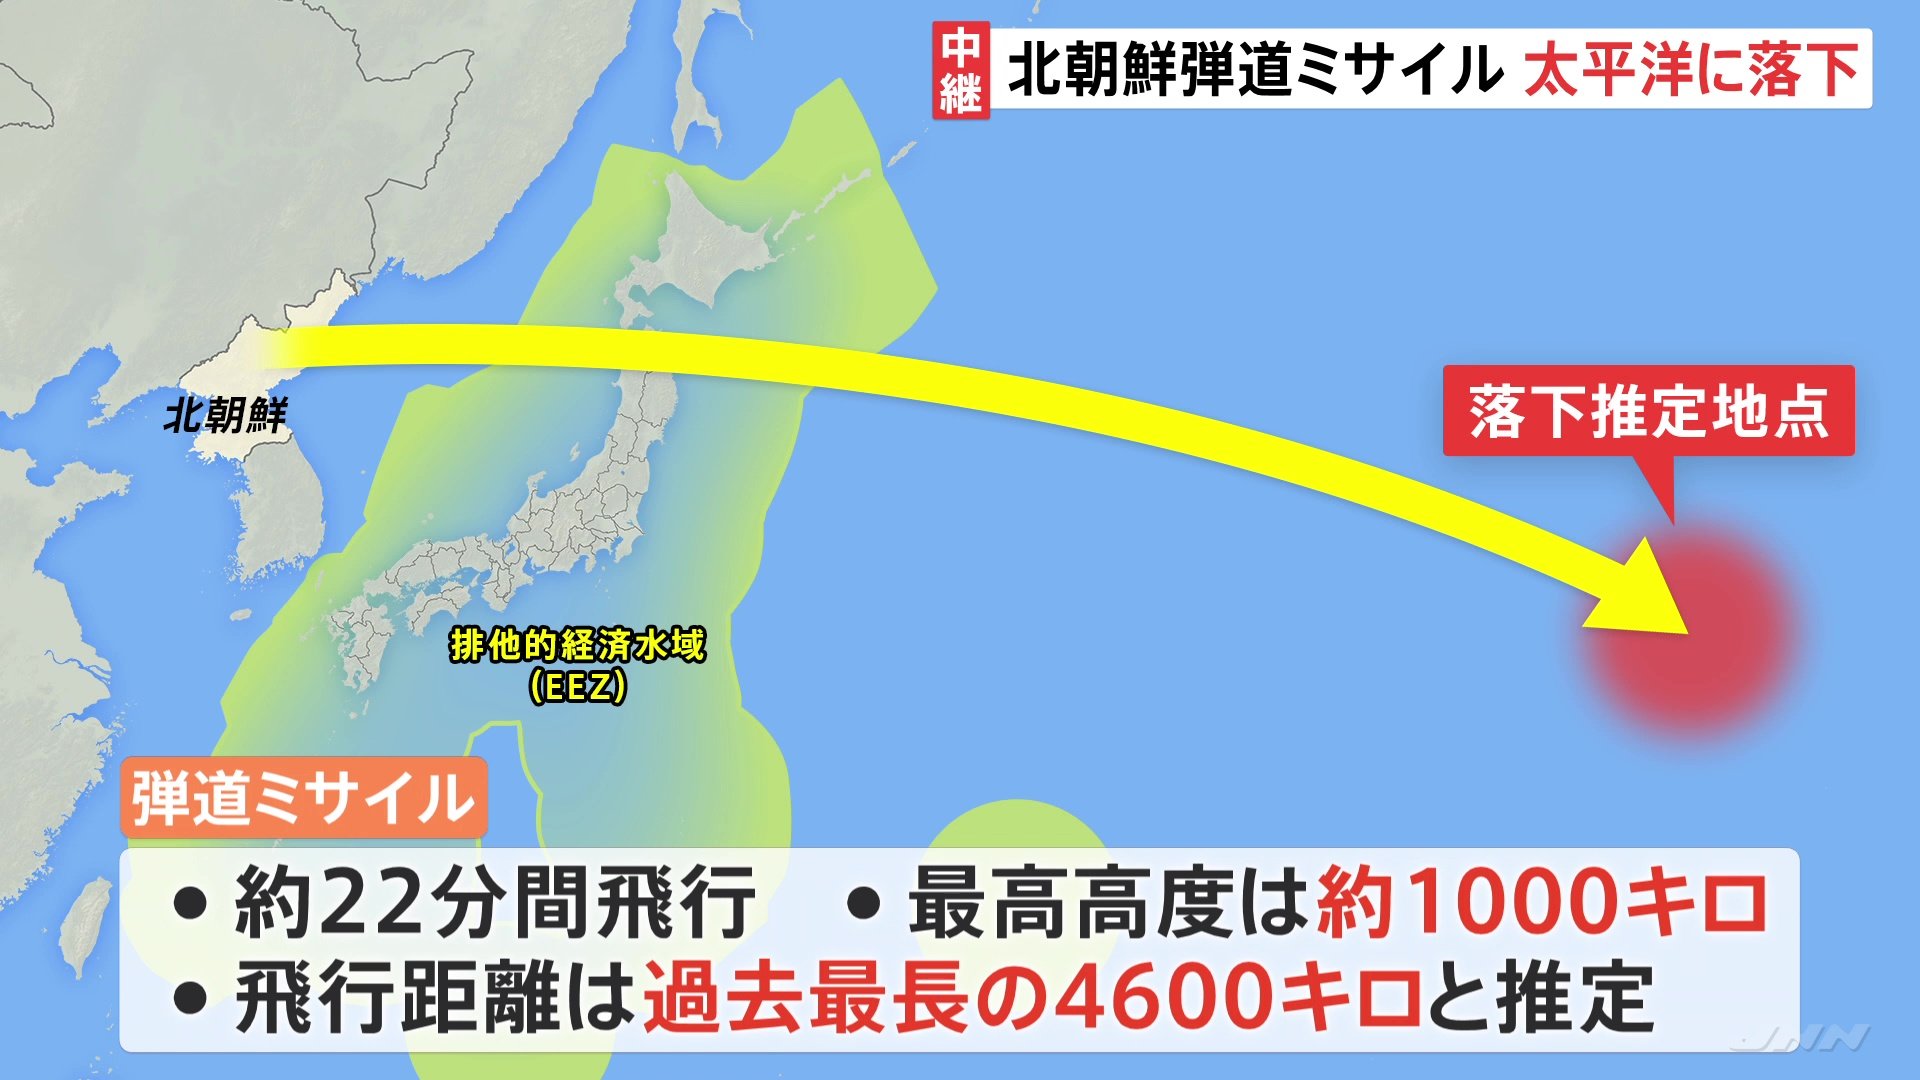 岸田総理「暴挙であり強く非難」ミサイルの推定飛行距離は過去最長4600キロ | TBS NEWS DIG